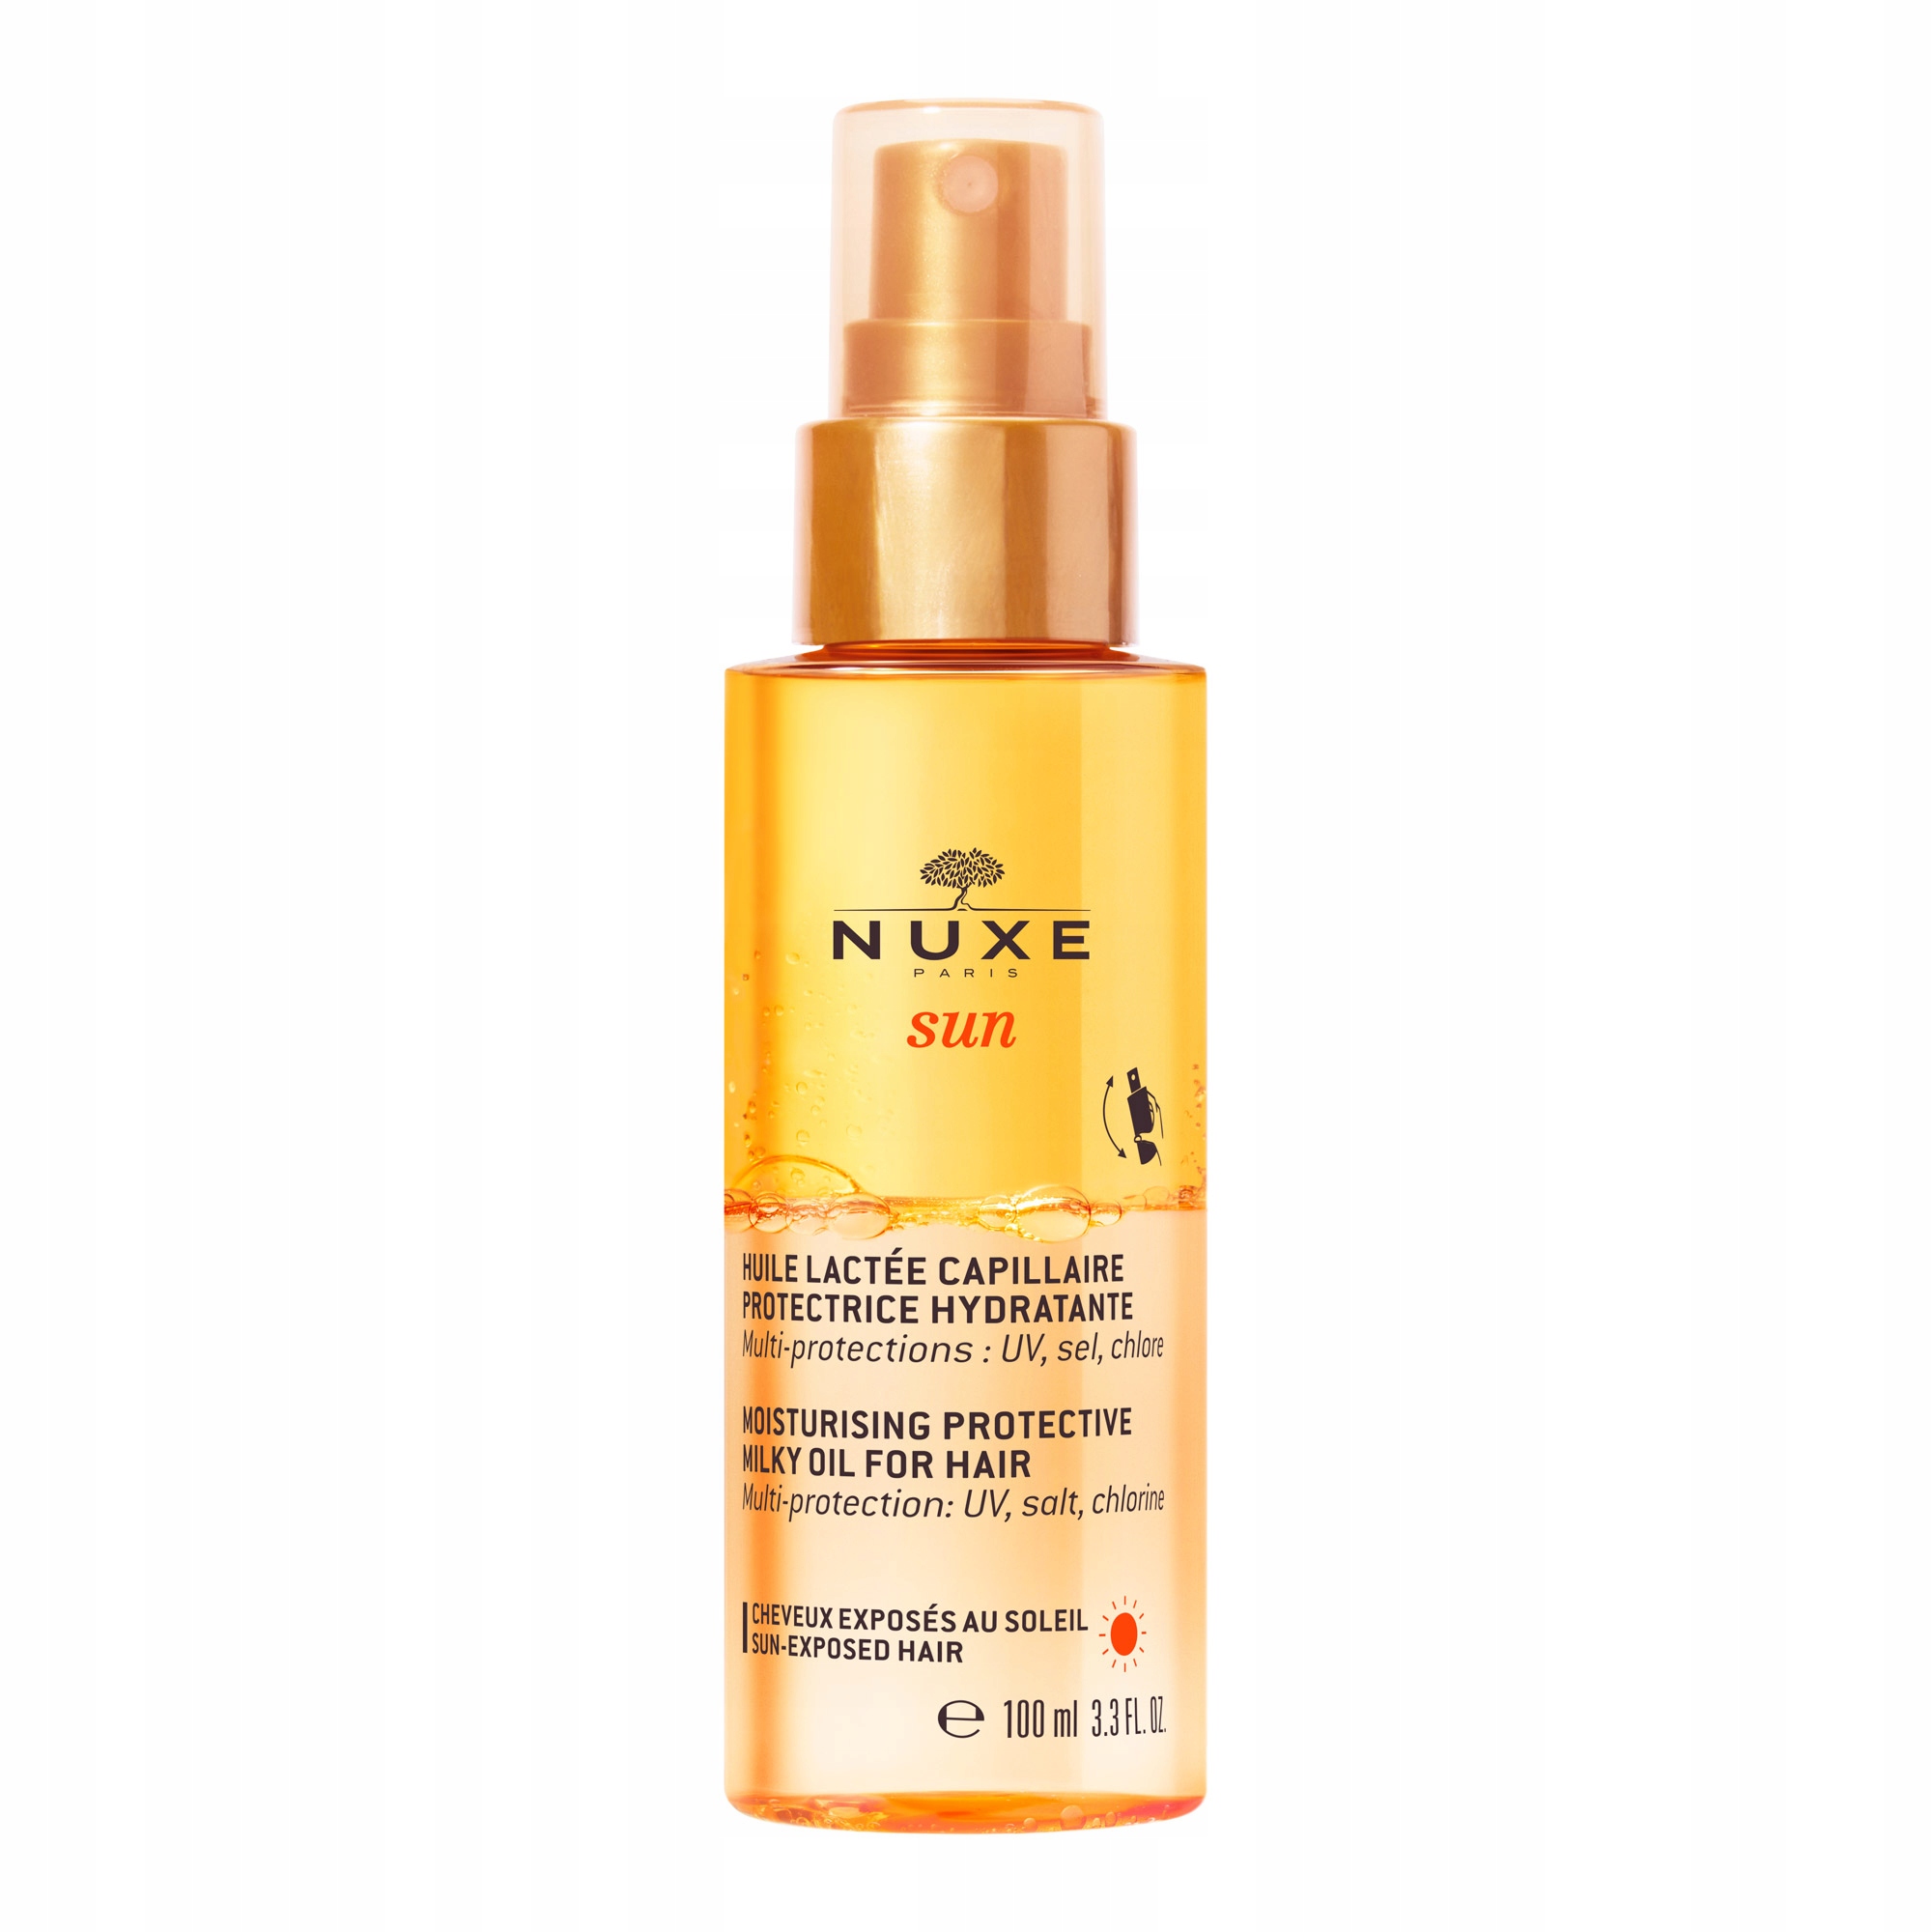 nuxe sun nawilżająco-ochronny mleczny olejek do włosów 100 ml